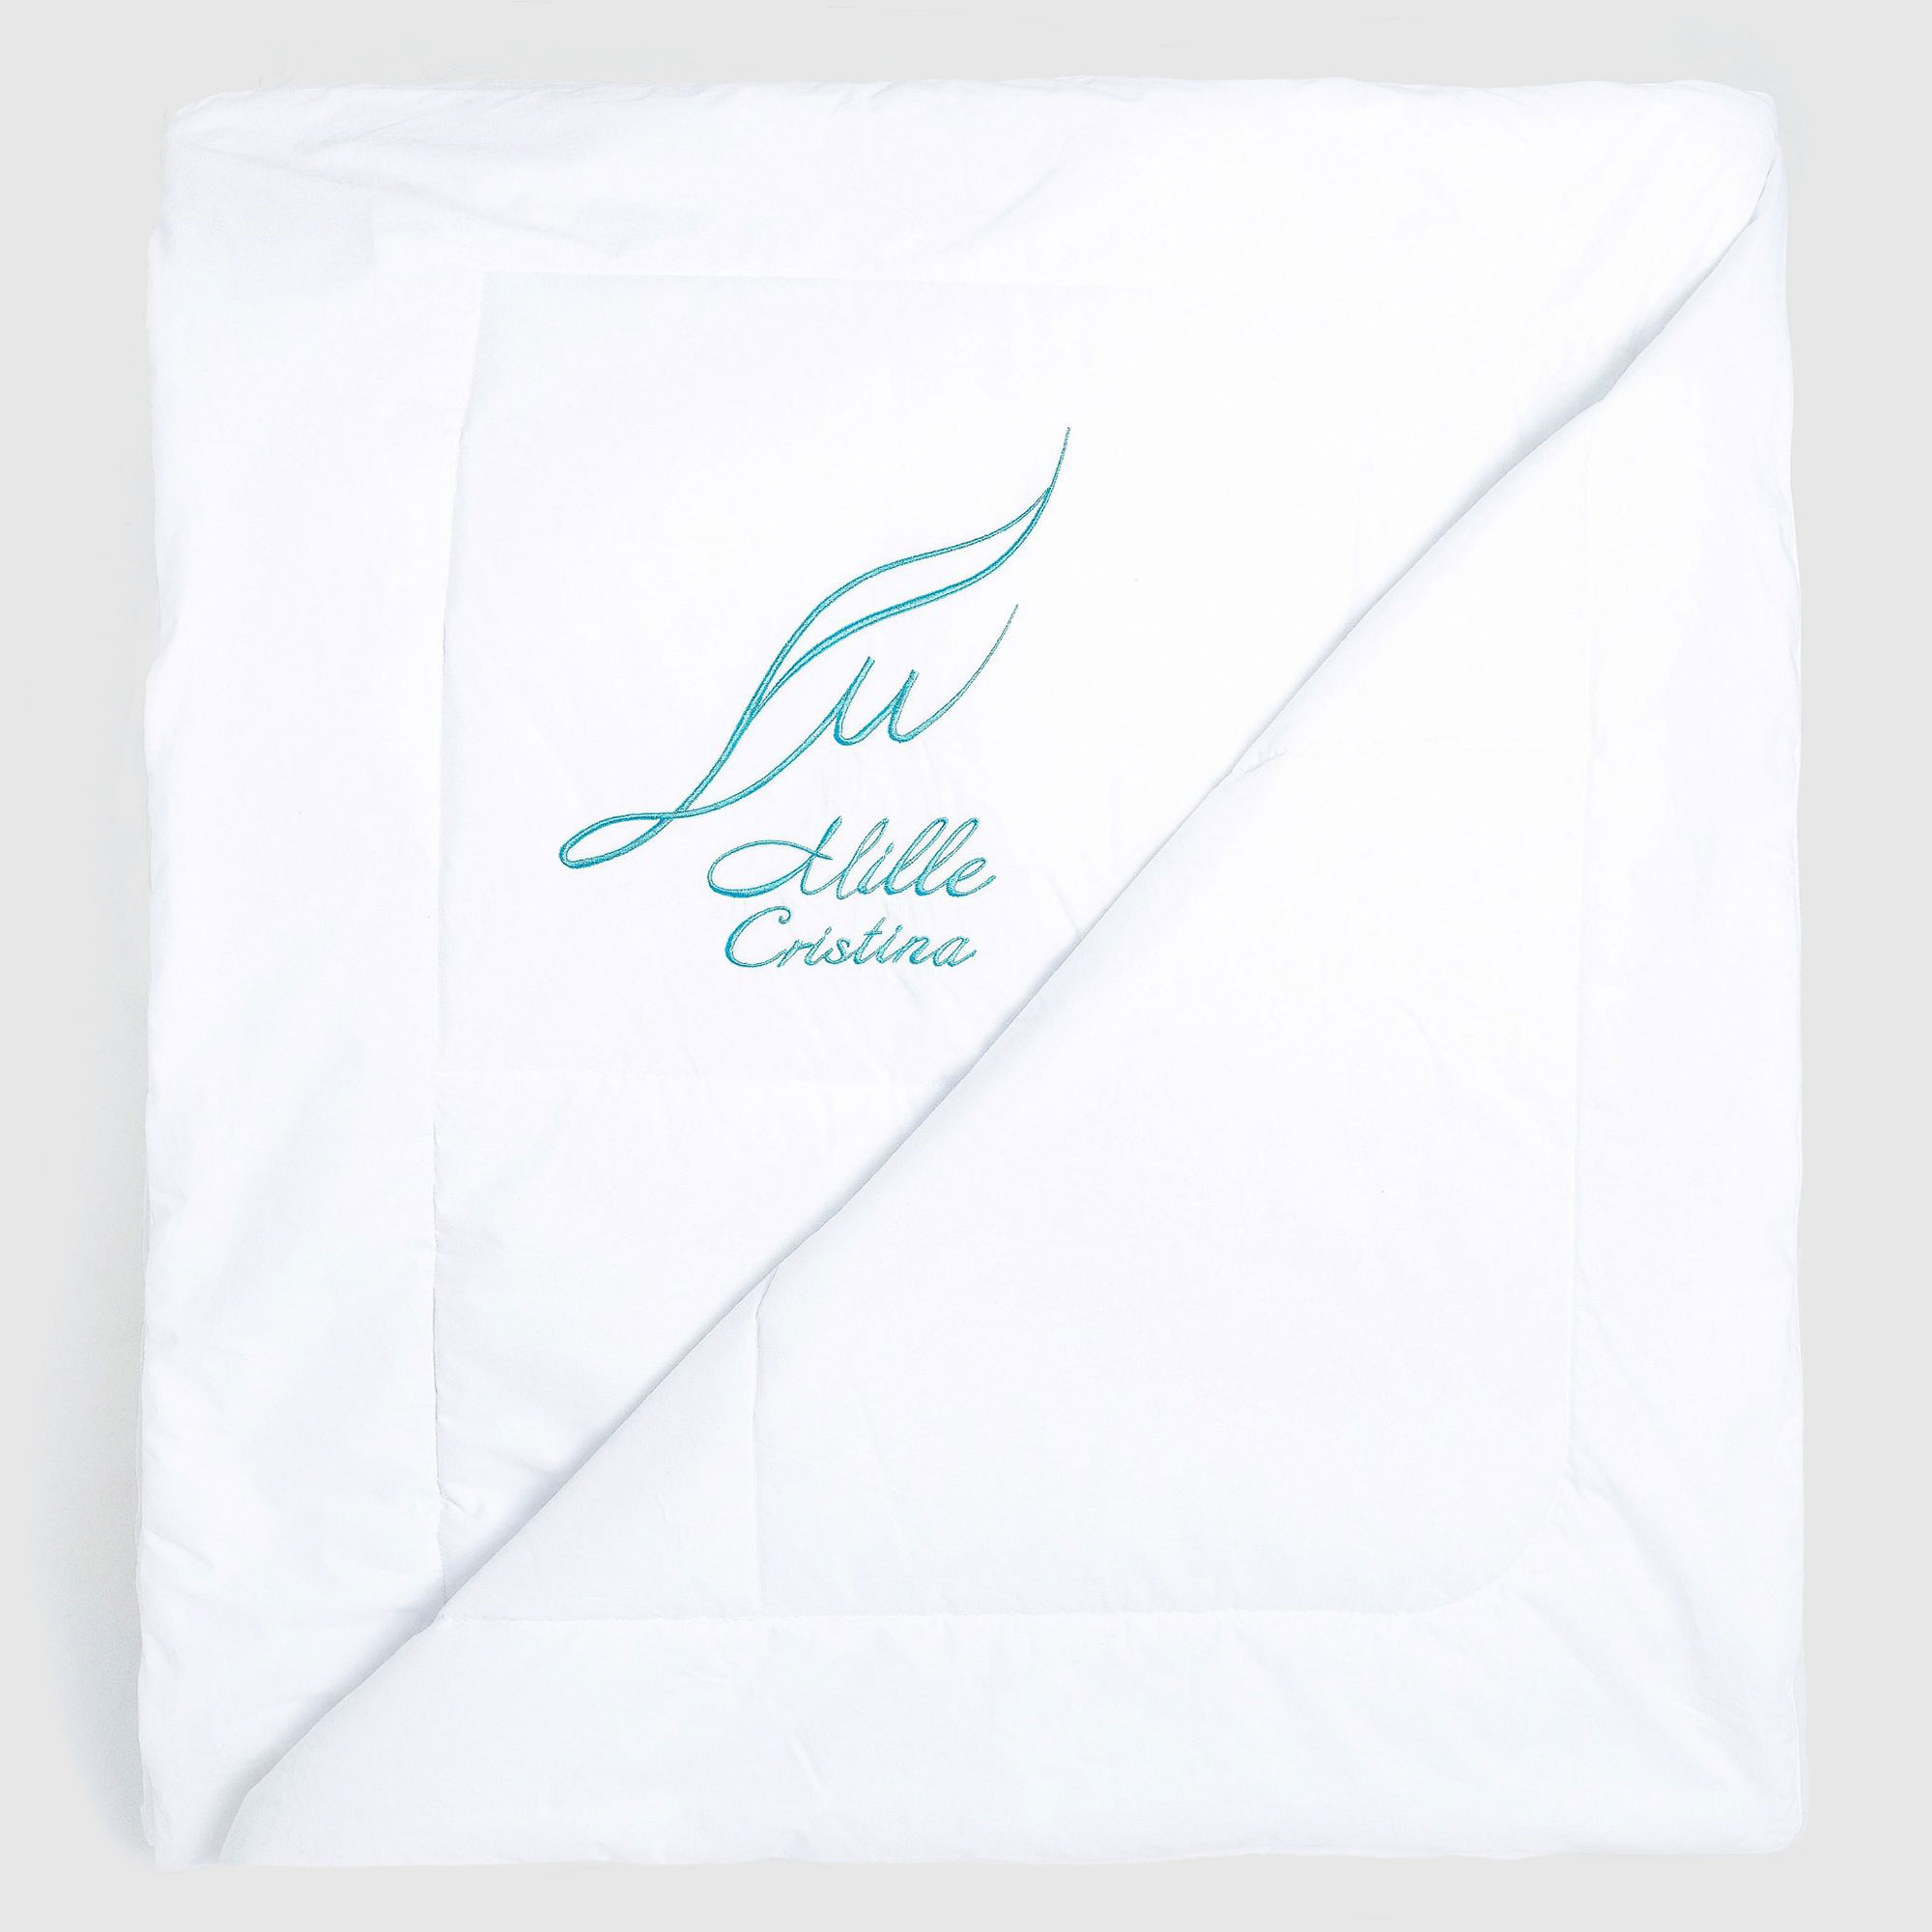 Одеяло Cristina Mille в ассортименте 200х220 см, цвет мультиколор - фото 2